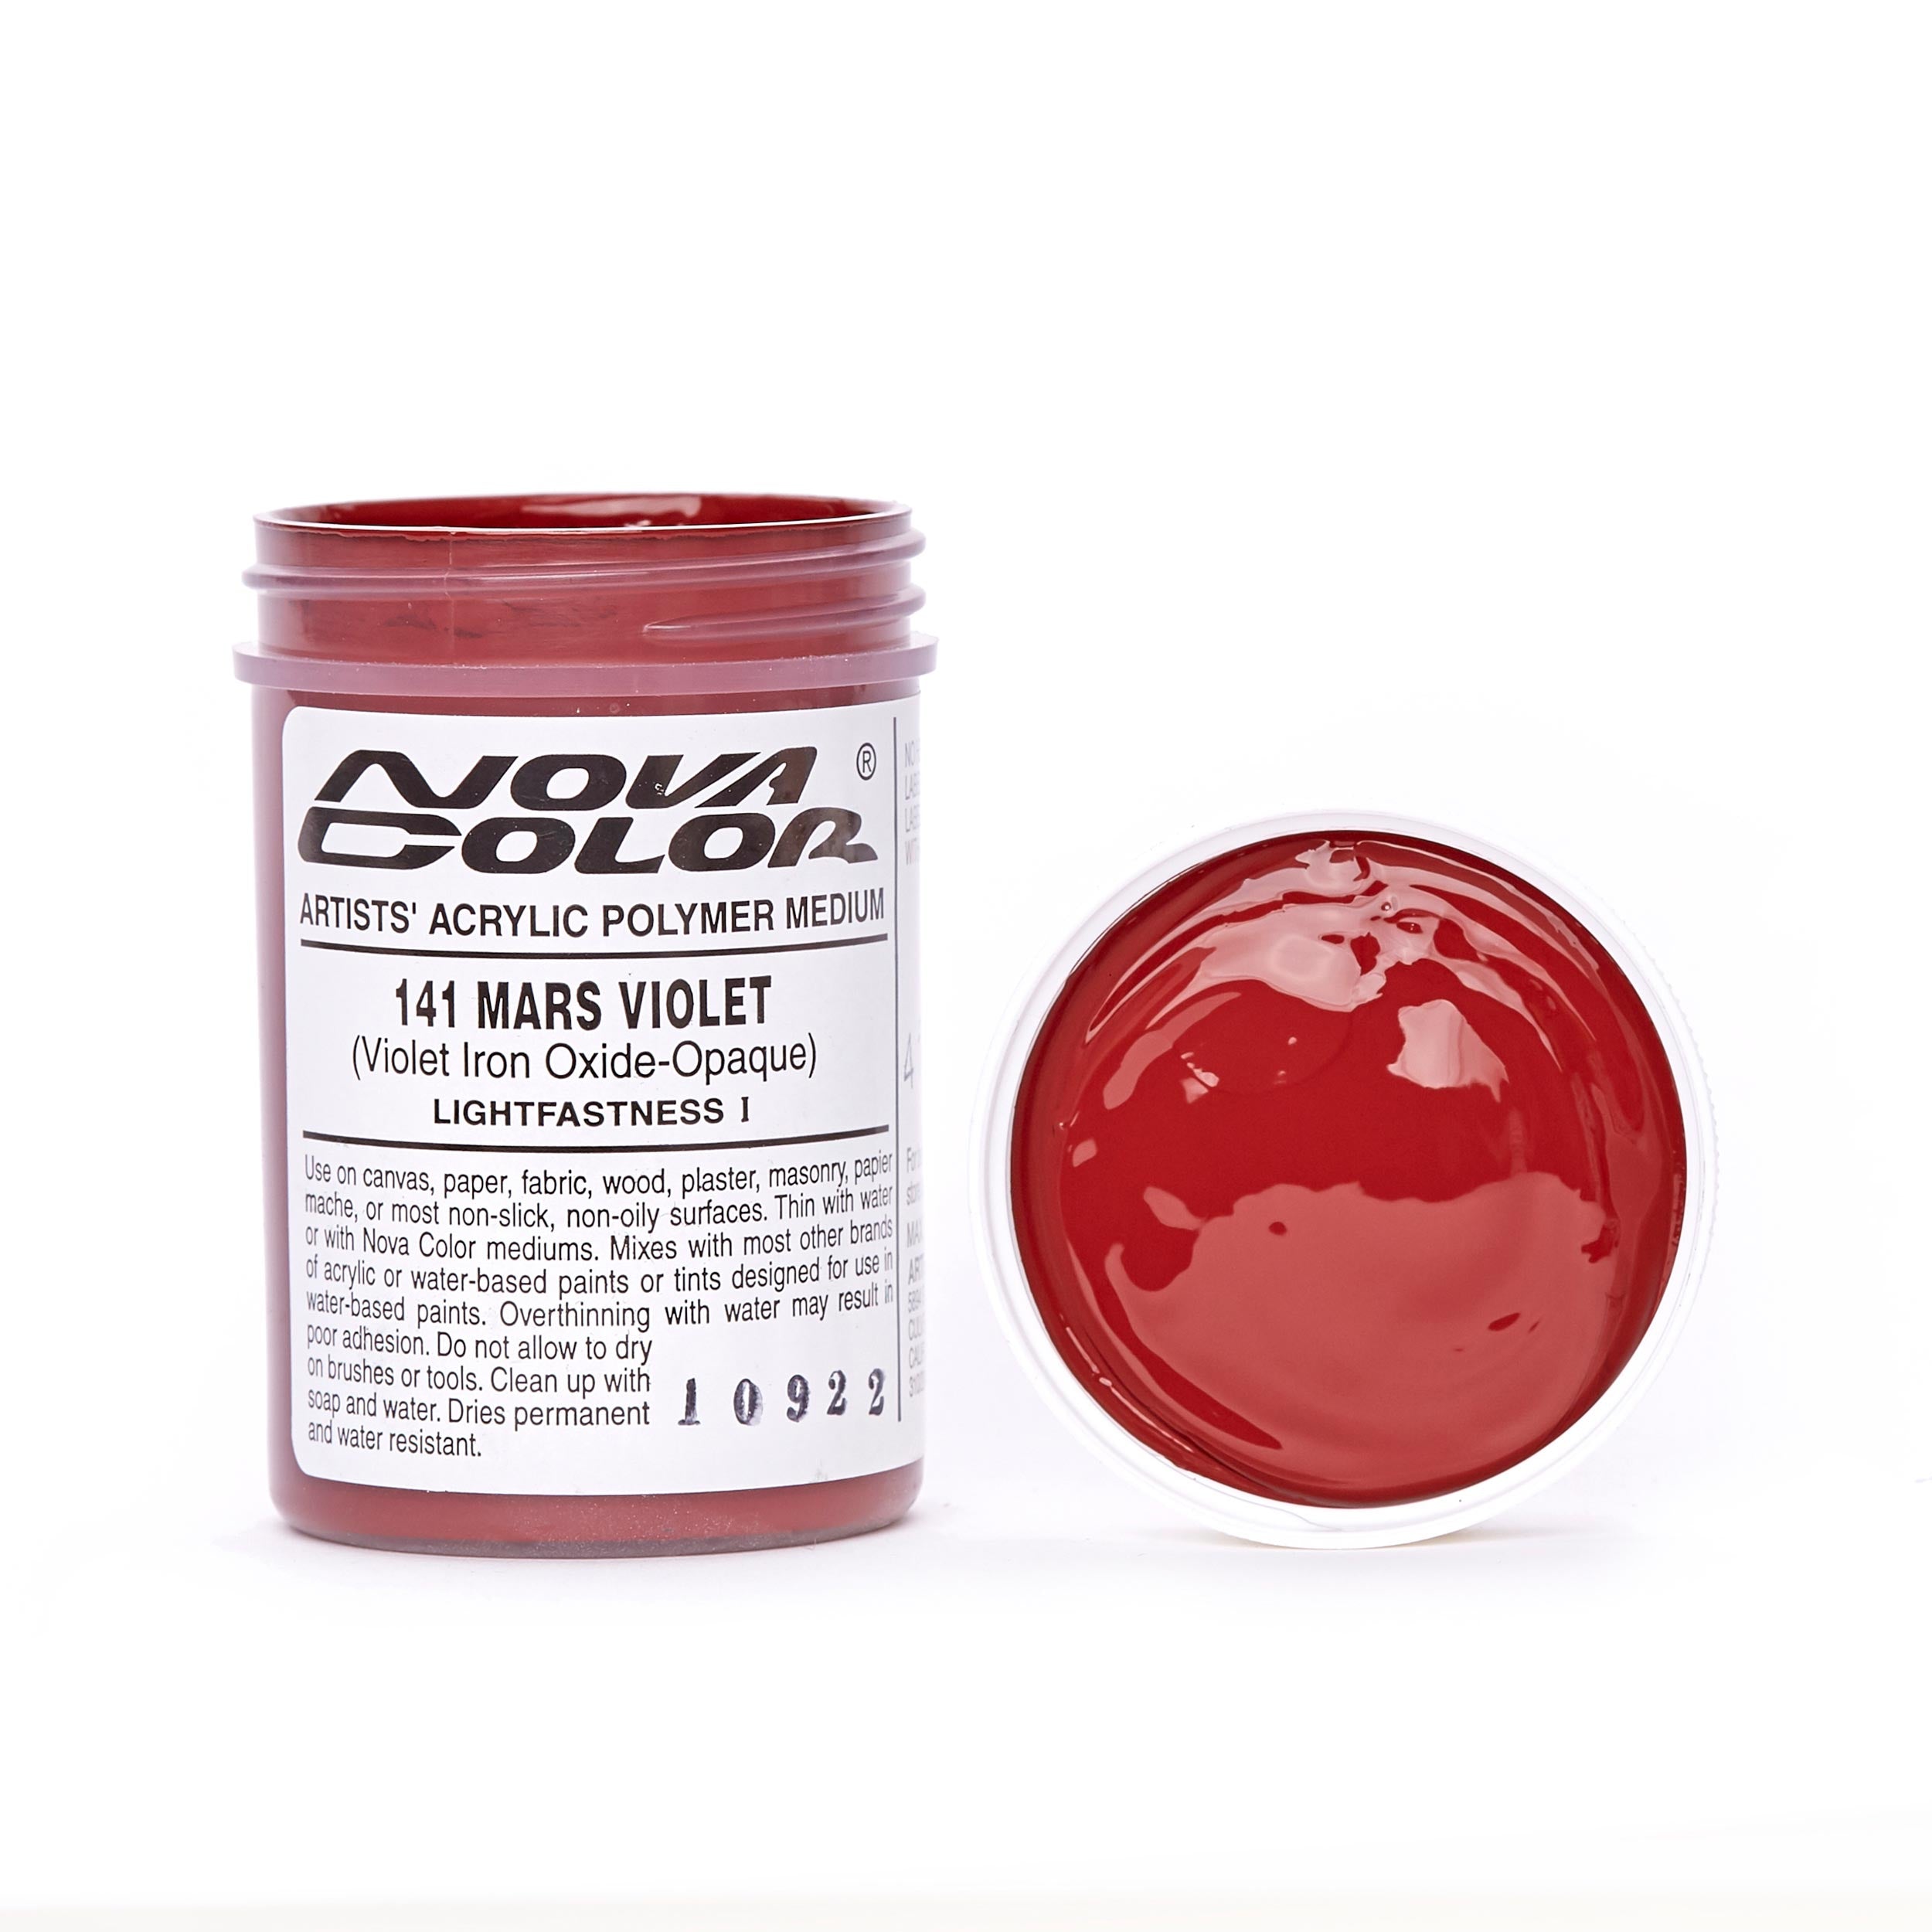 Buy #132 Cadmium Red Deep - Lightfastness:, ** - Opaque Online